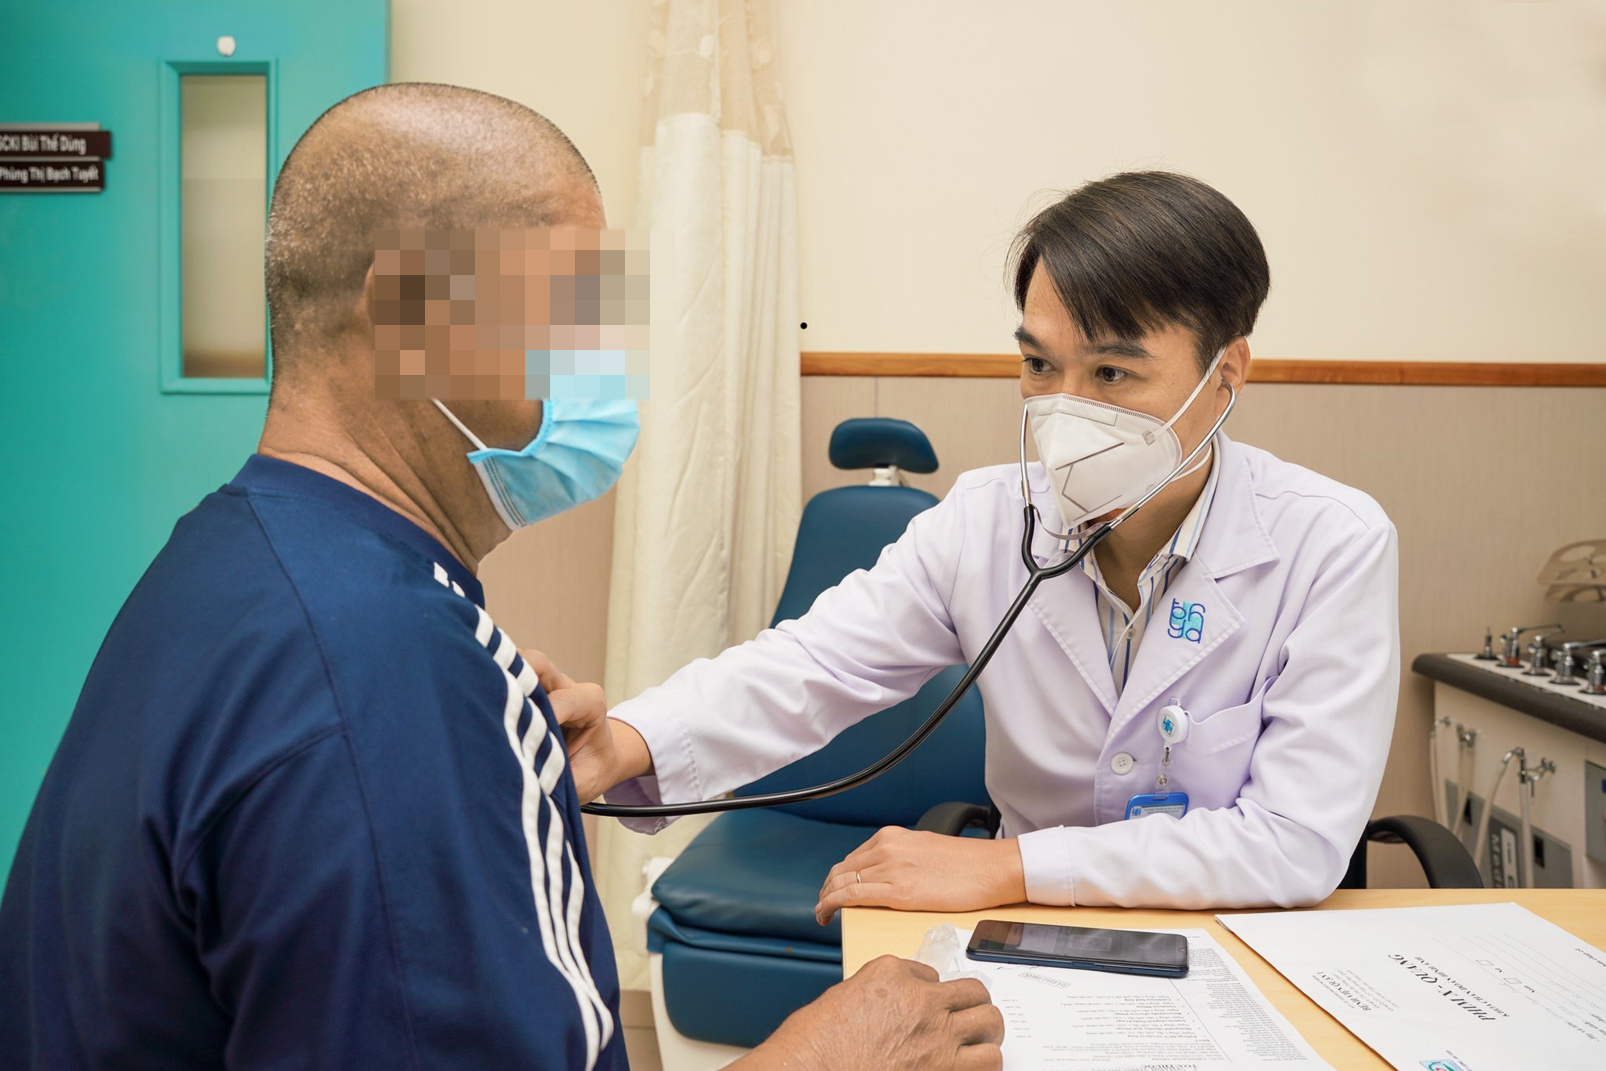 Tiến sĩ - bác sĩ Bùi Thế Dũng, Trưởng khoa Nội tim mạch Bệnh viện Đại học Y Dược TP.HCM, thăm khám cho bệnh nhân thuyên tắc phổi